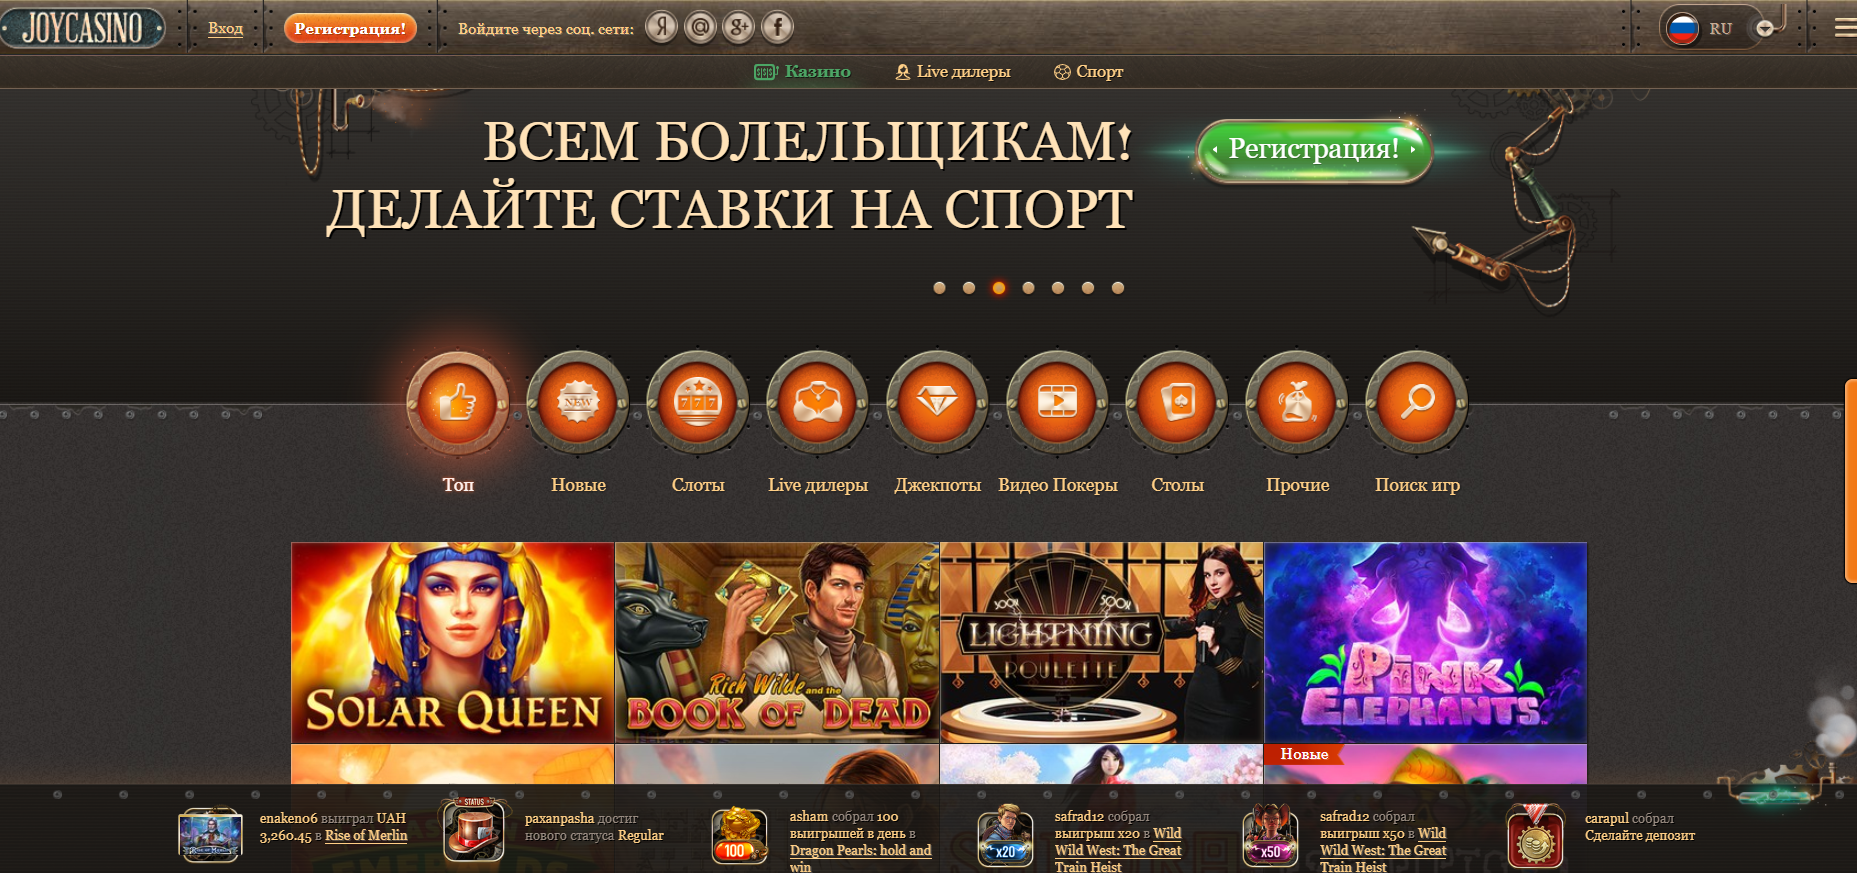 Промо джойказино для подписчиков slotozal online casino отзывы о сайте